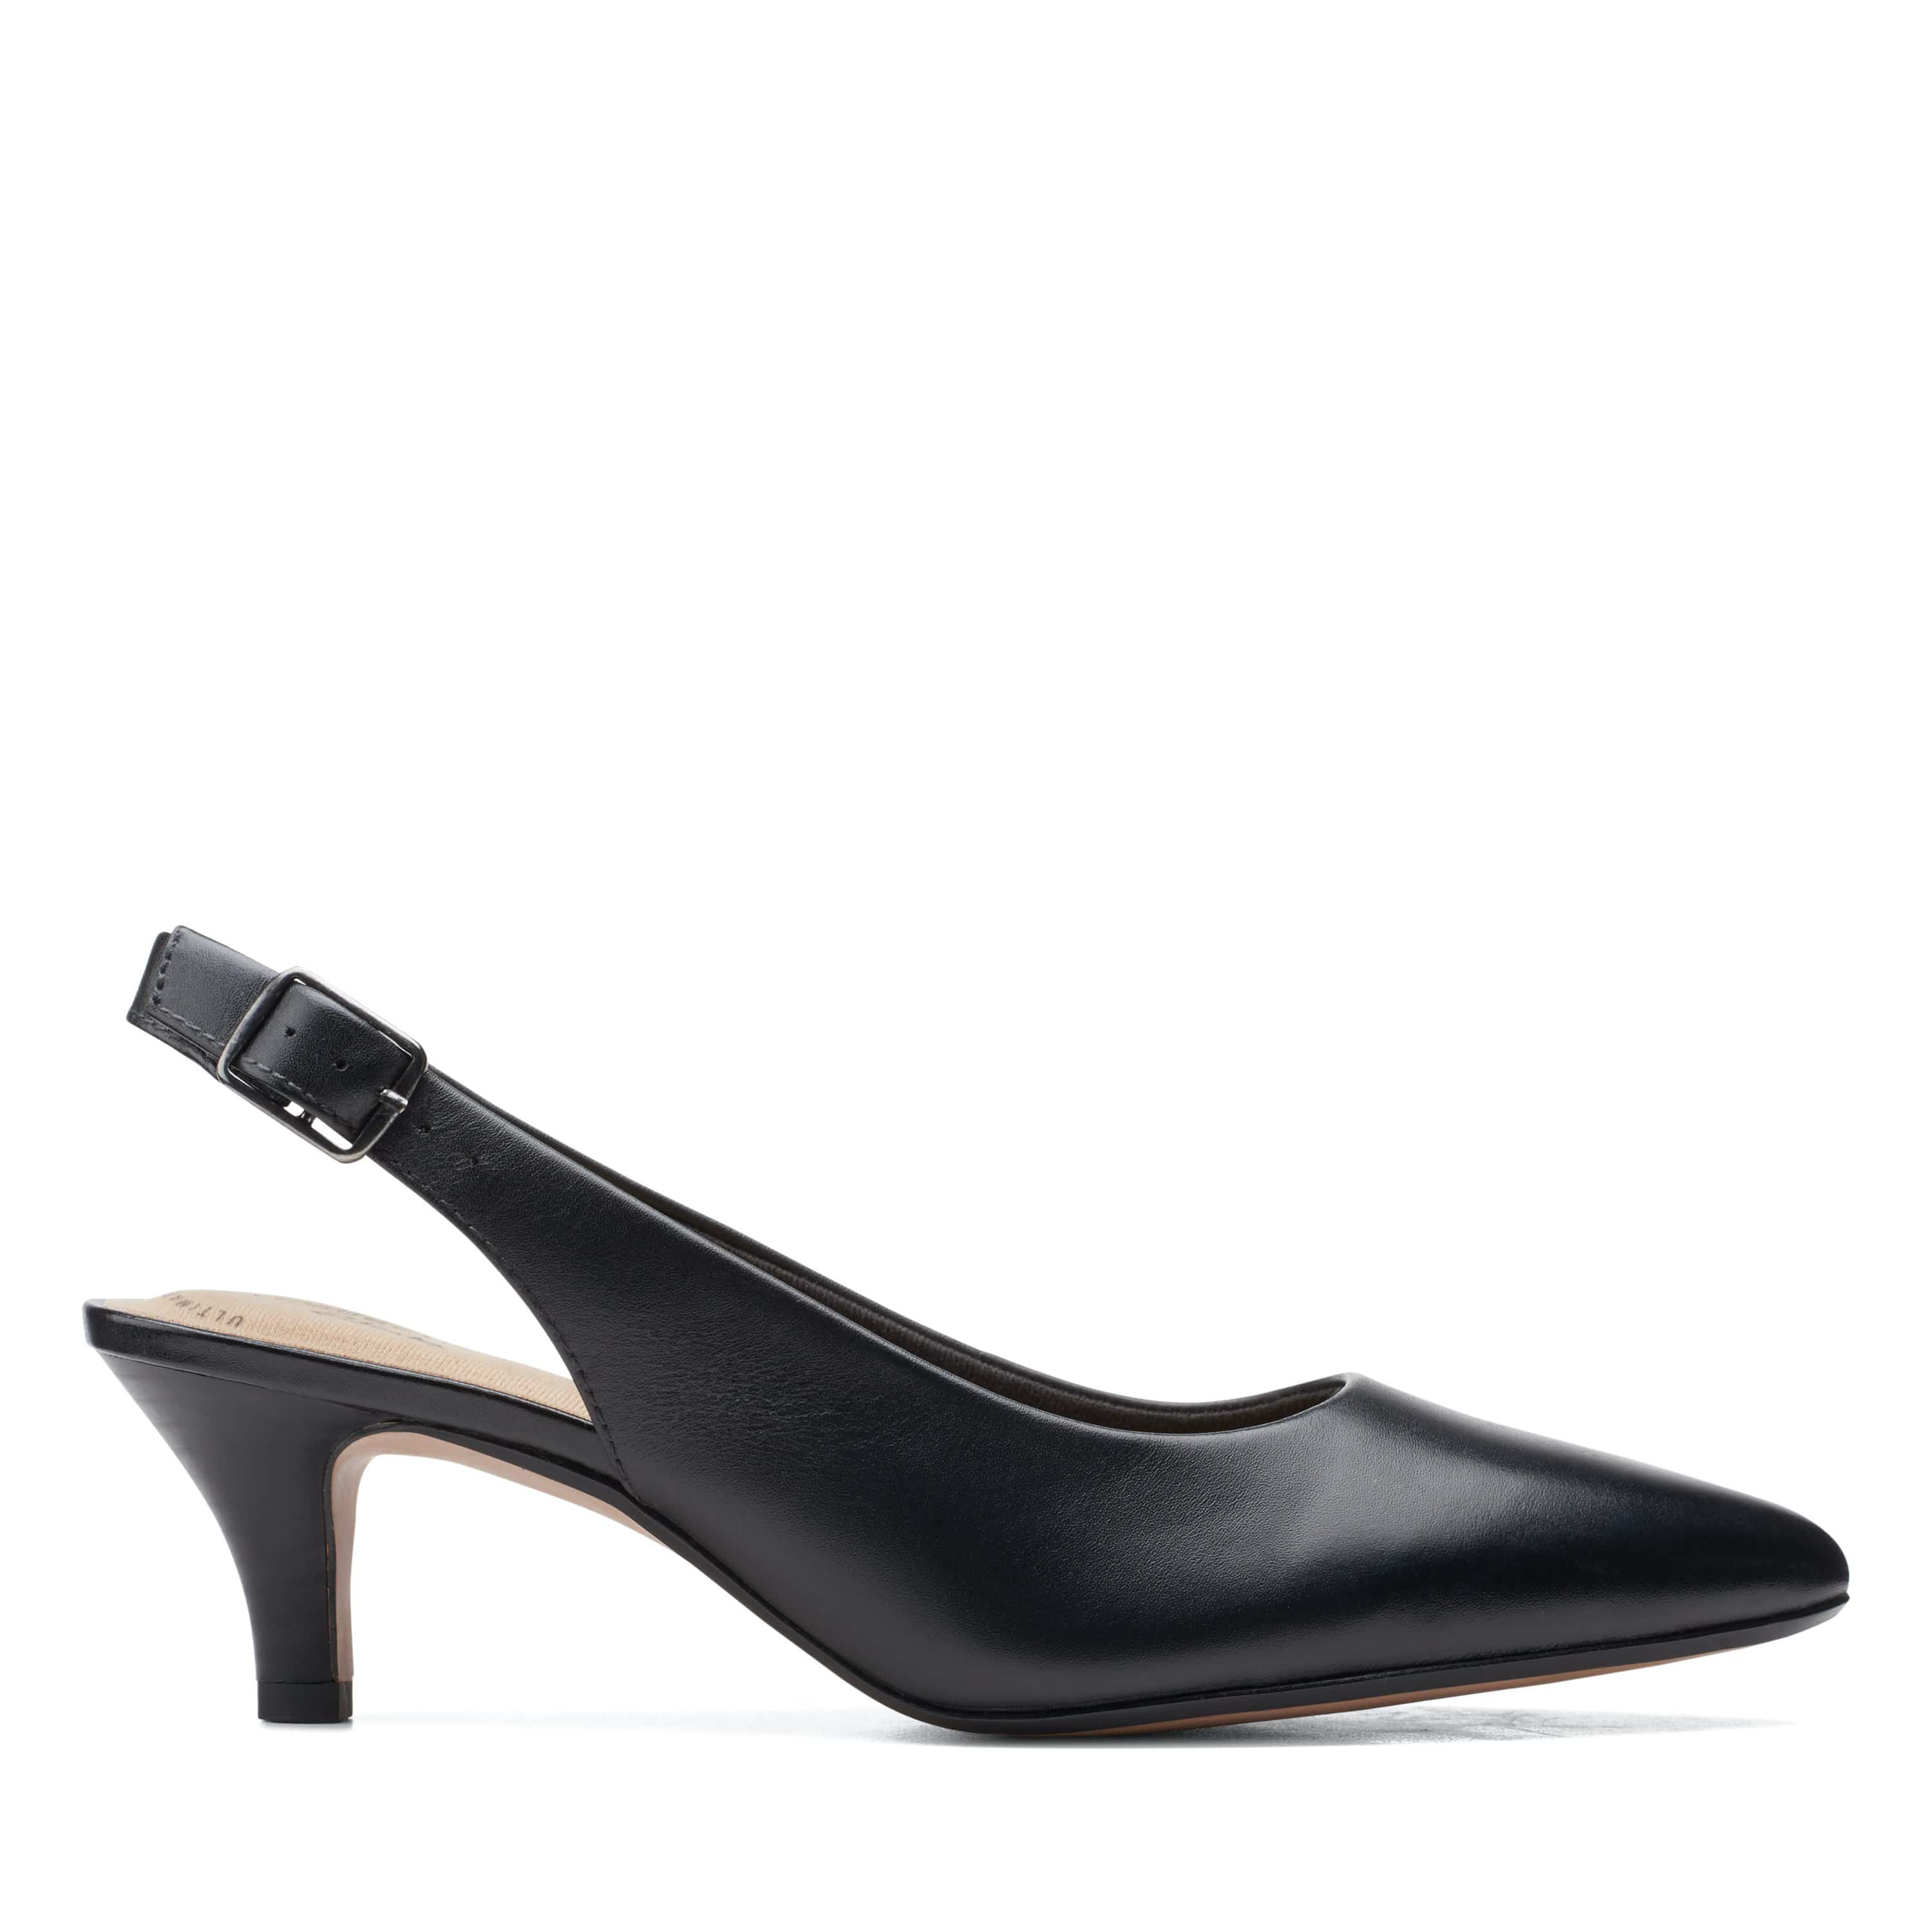 Clarks Linvale Sondra Shoes Black Leather   - 26153230 -  D Width (Standard Fit)